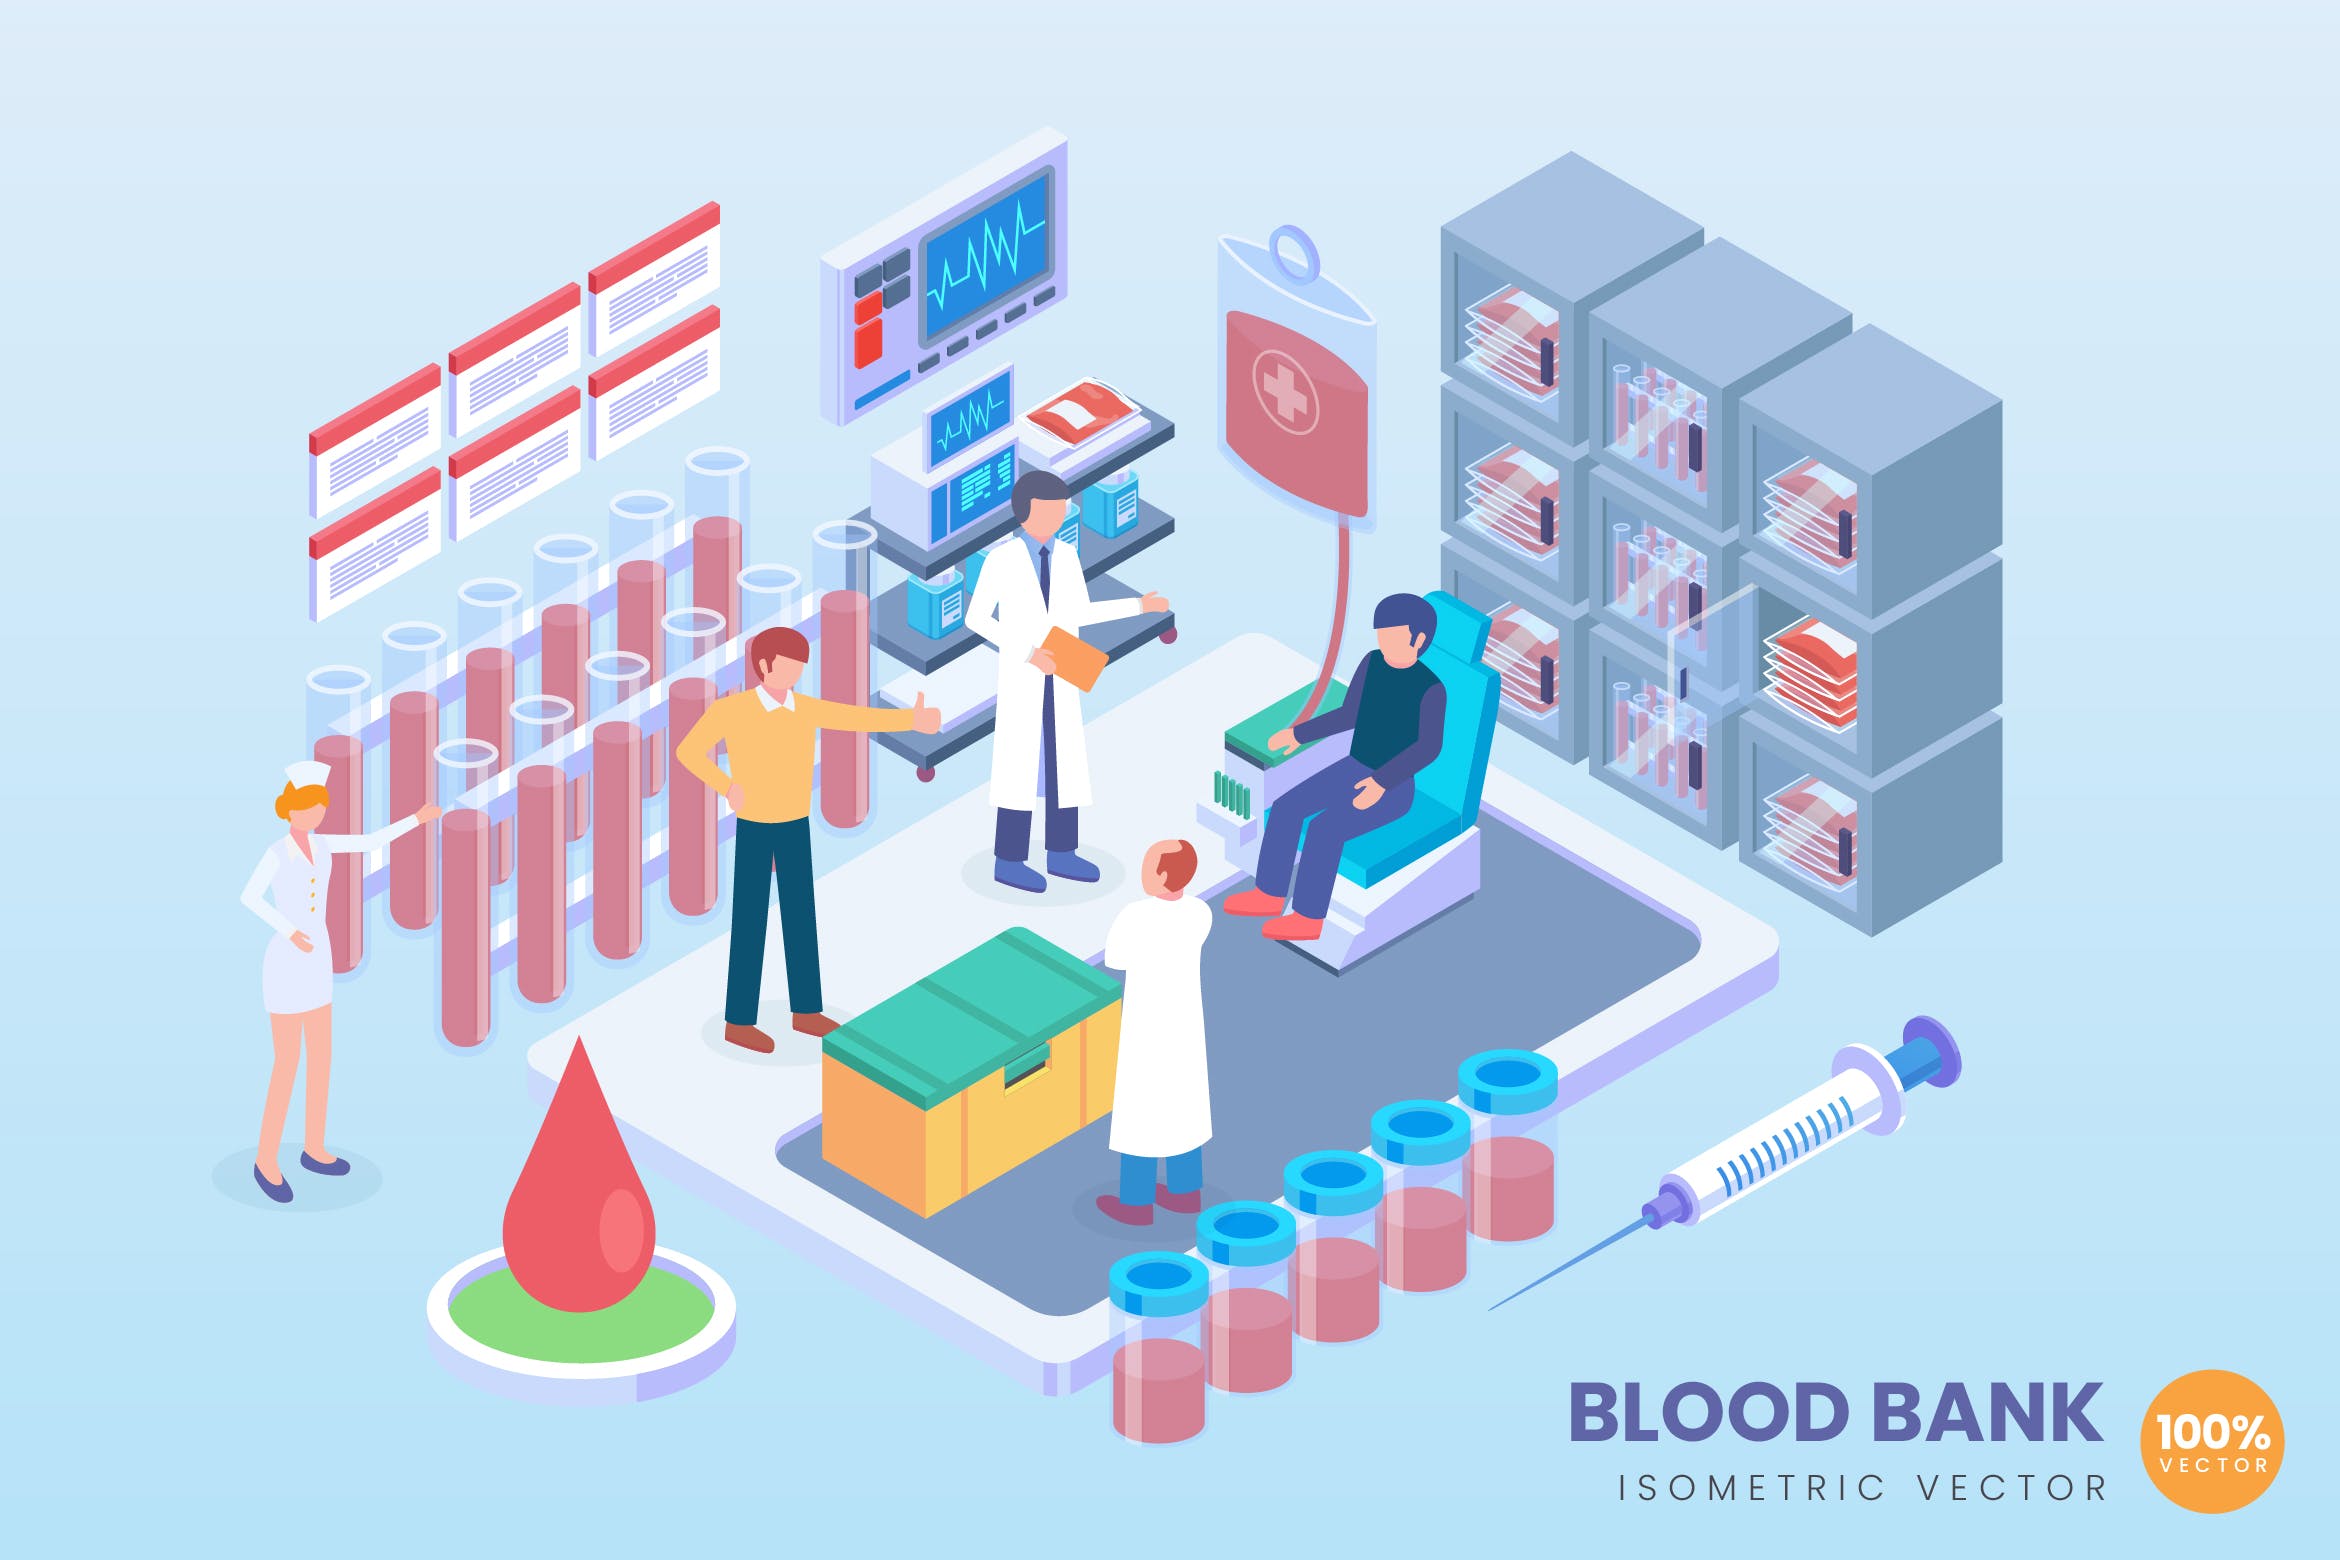 现代血库存储技术主题等距矢量蚂蚁素材精选科技概念插画 Isometric Blood Bank Vector Concept插图